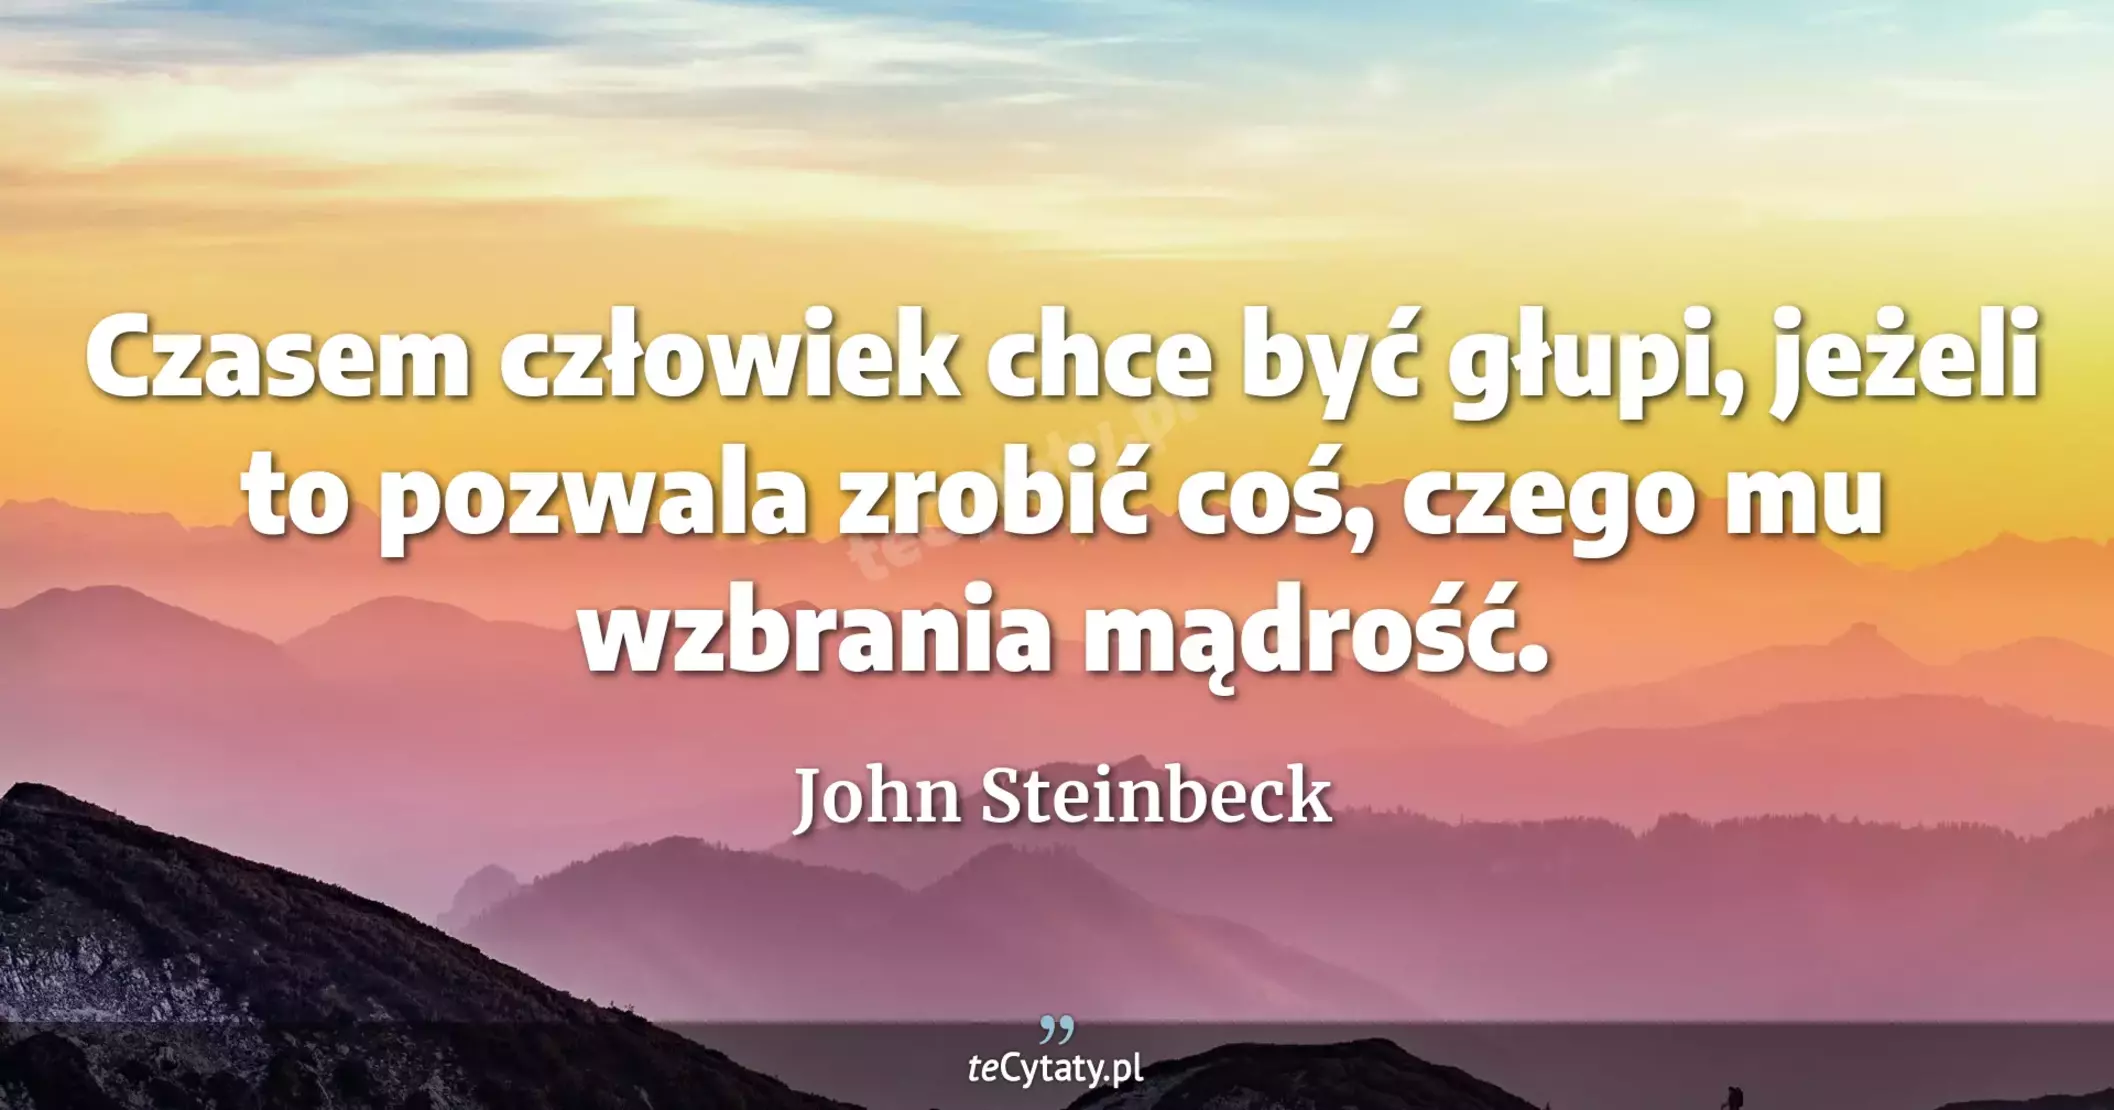 Czasem człowiek chce być głupi, jeżeli to pozwala zrobić coś, czego mu wzbrania mądrość. - John Steinbeck